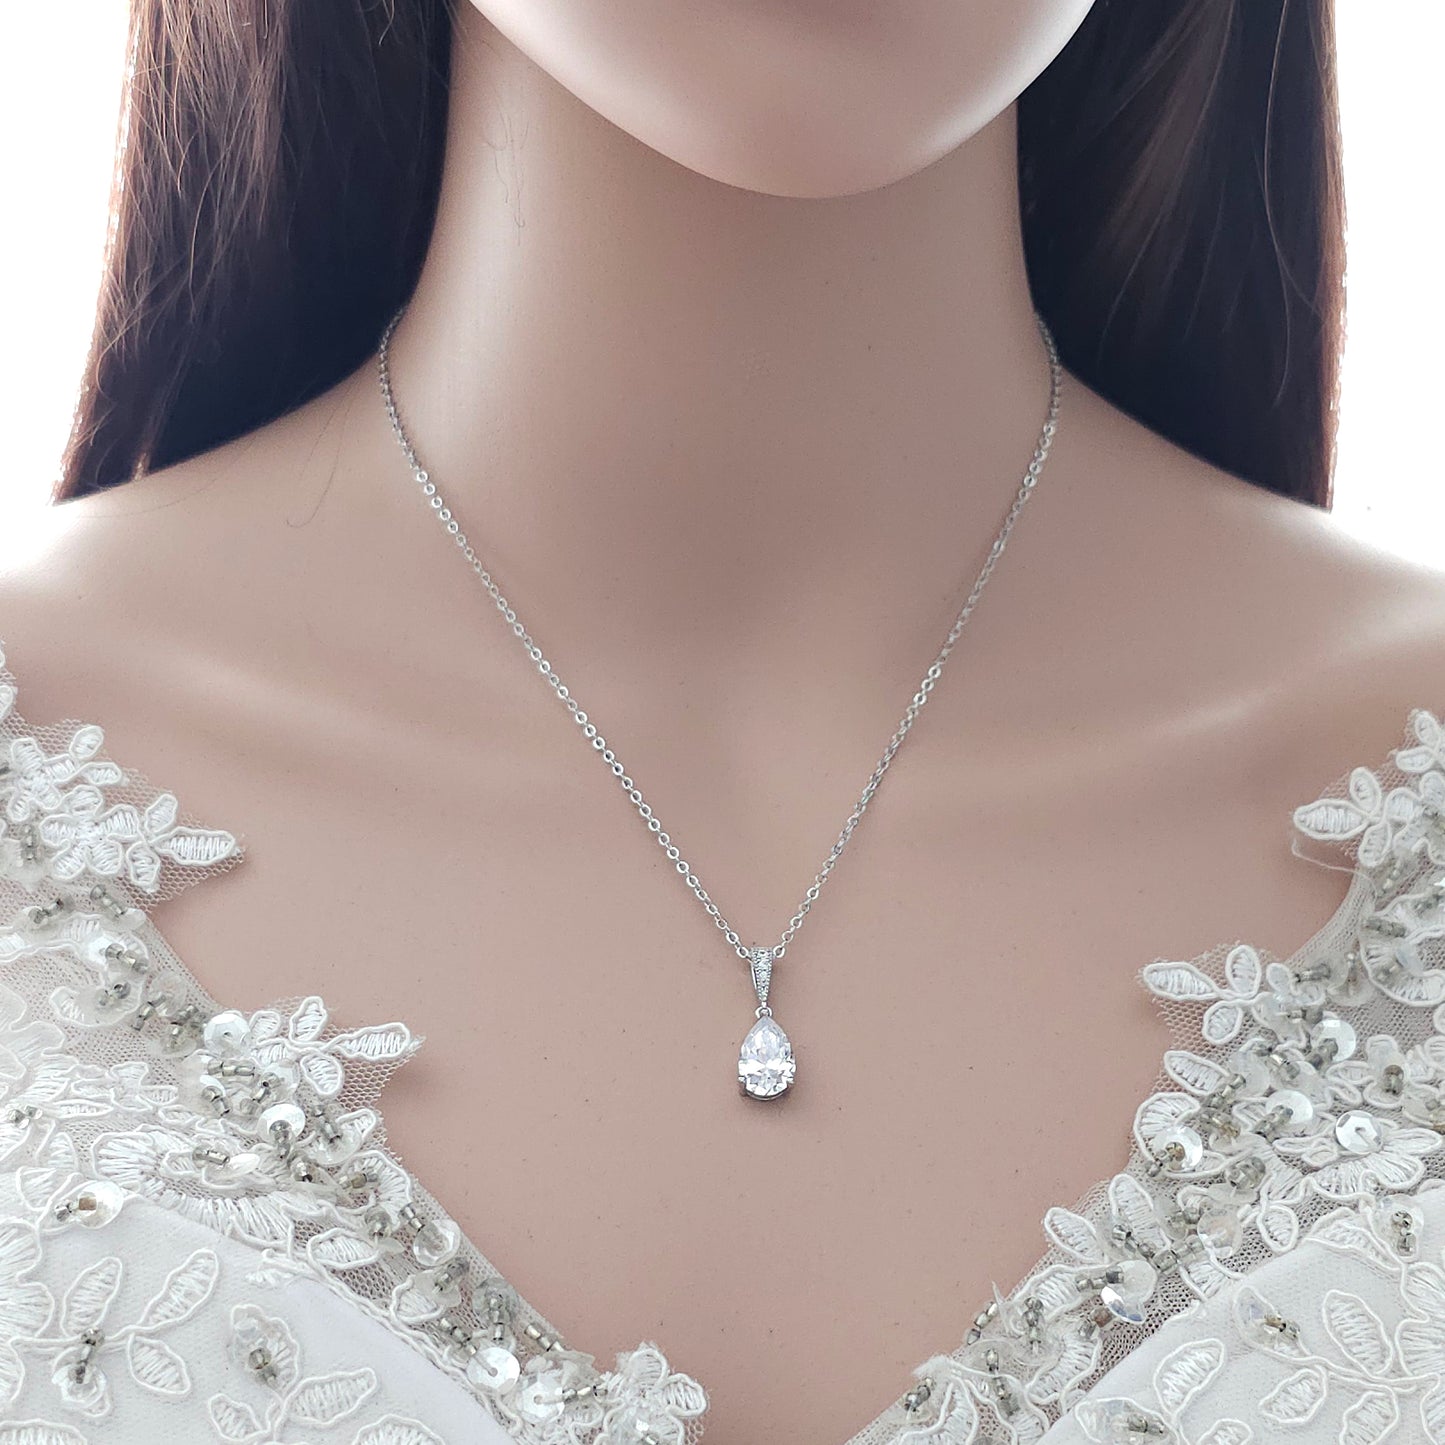 Teardrop Necklace in Gold for Brides & Bridesmaids- Nicole